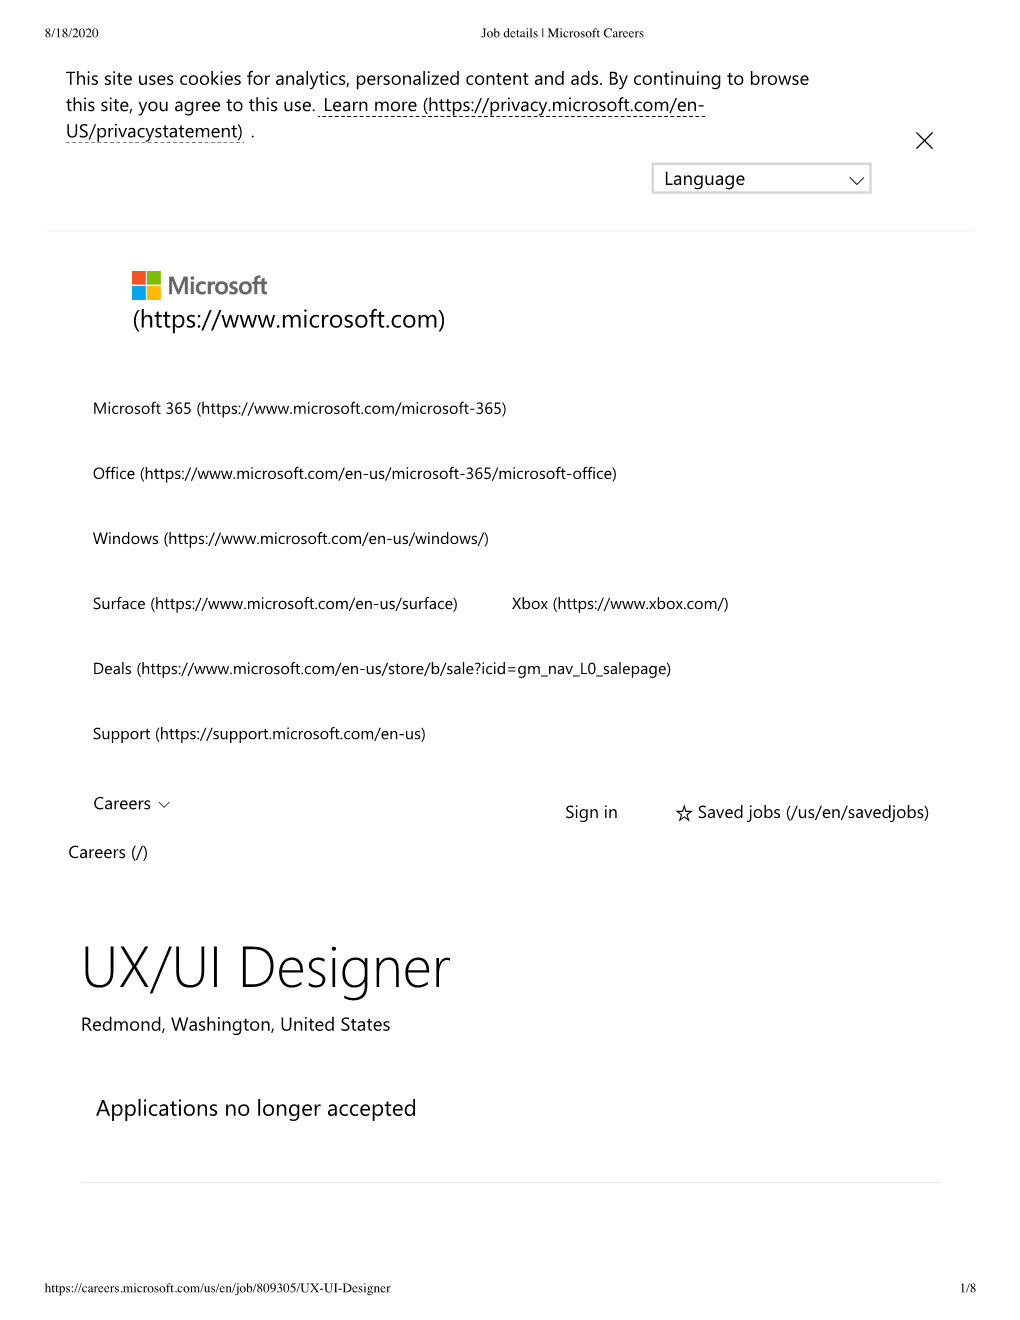 UX/UI Designer Redmond, Washington, United States